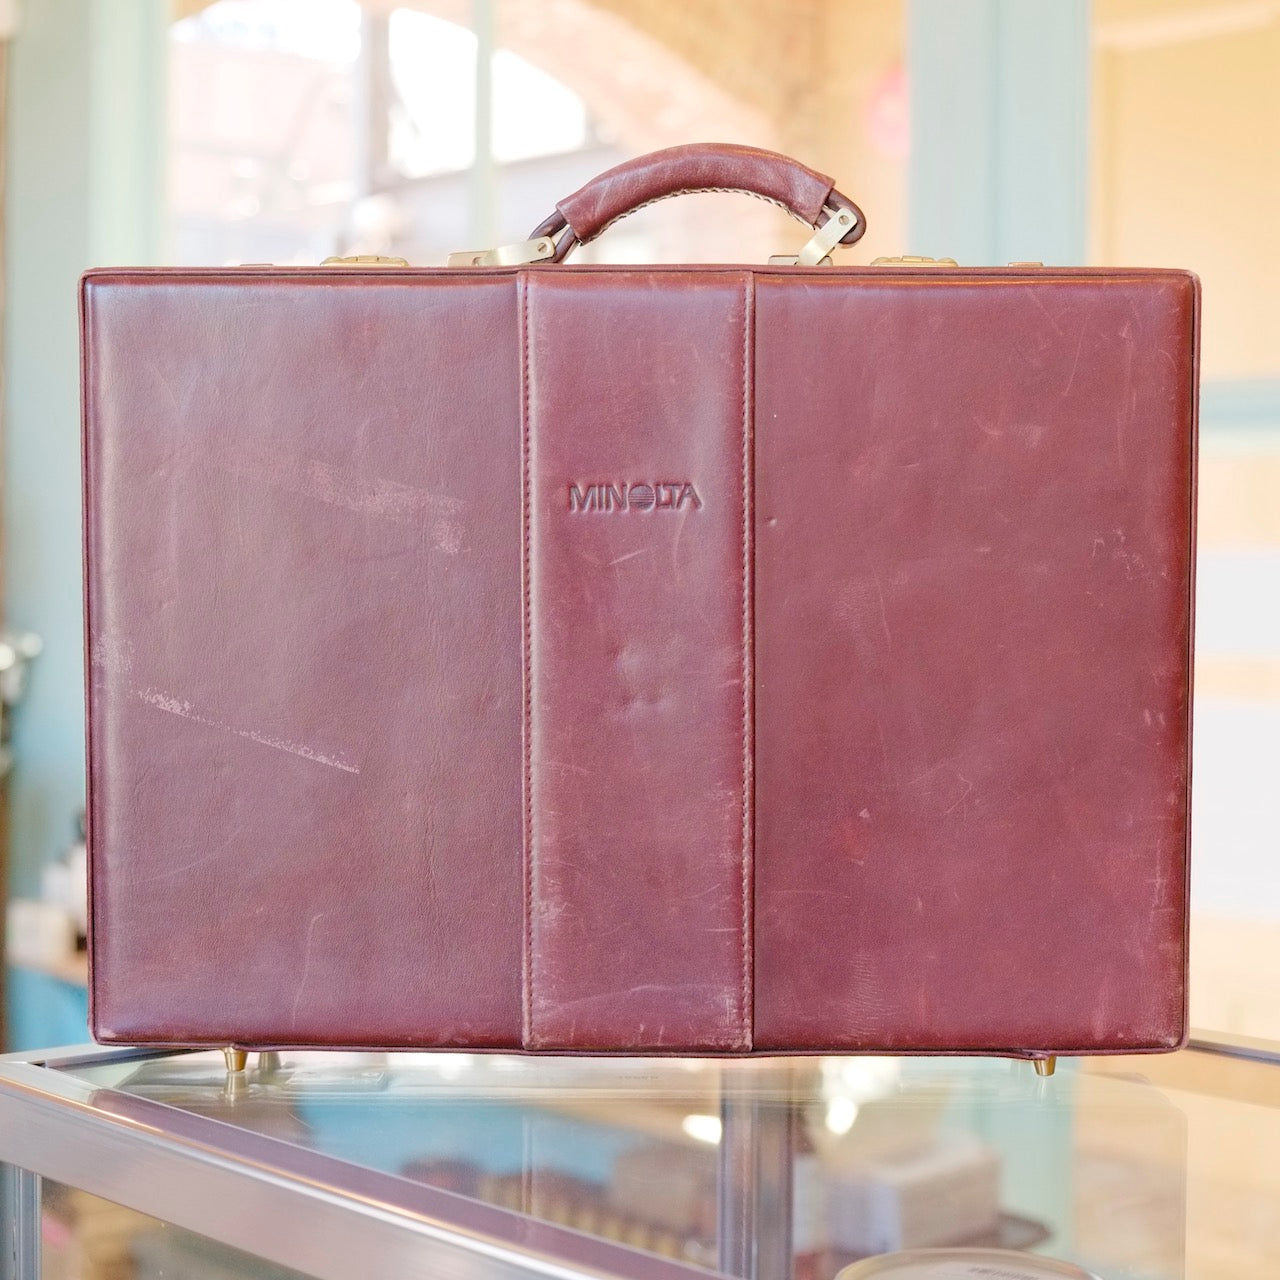 Minolta briefcase